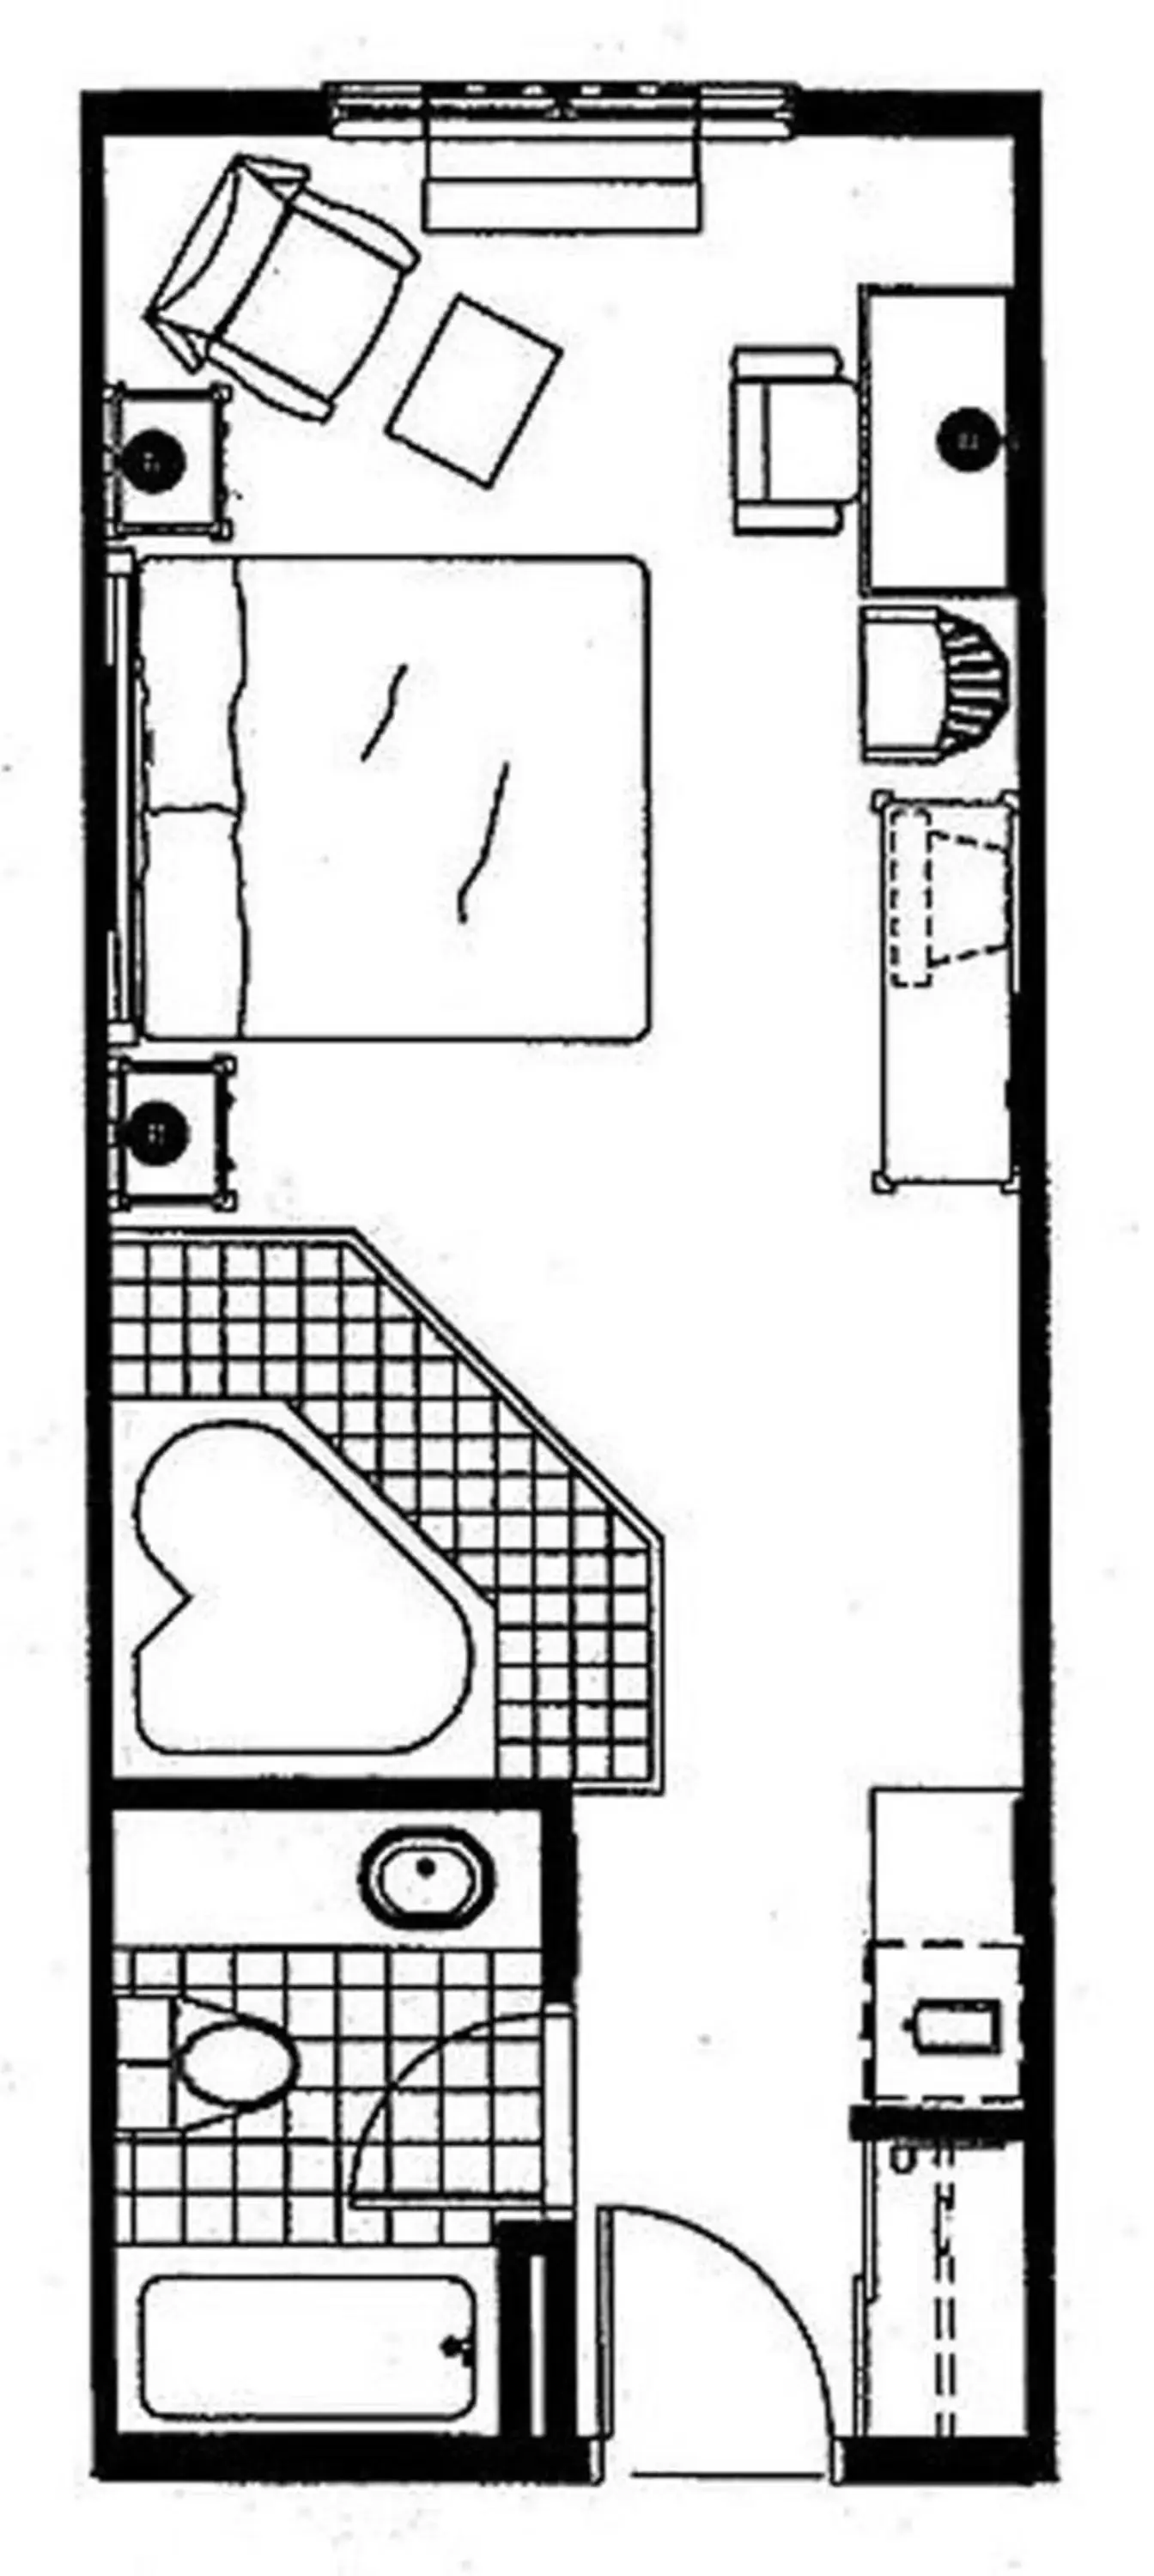 Floor Plan in Country Inn & Suites by Radisson, St. Petersburg - Clearwater, FL